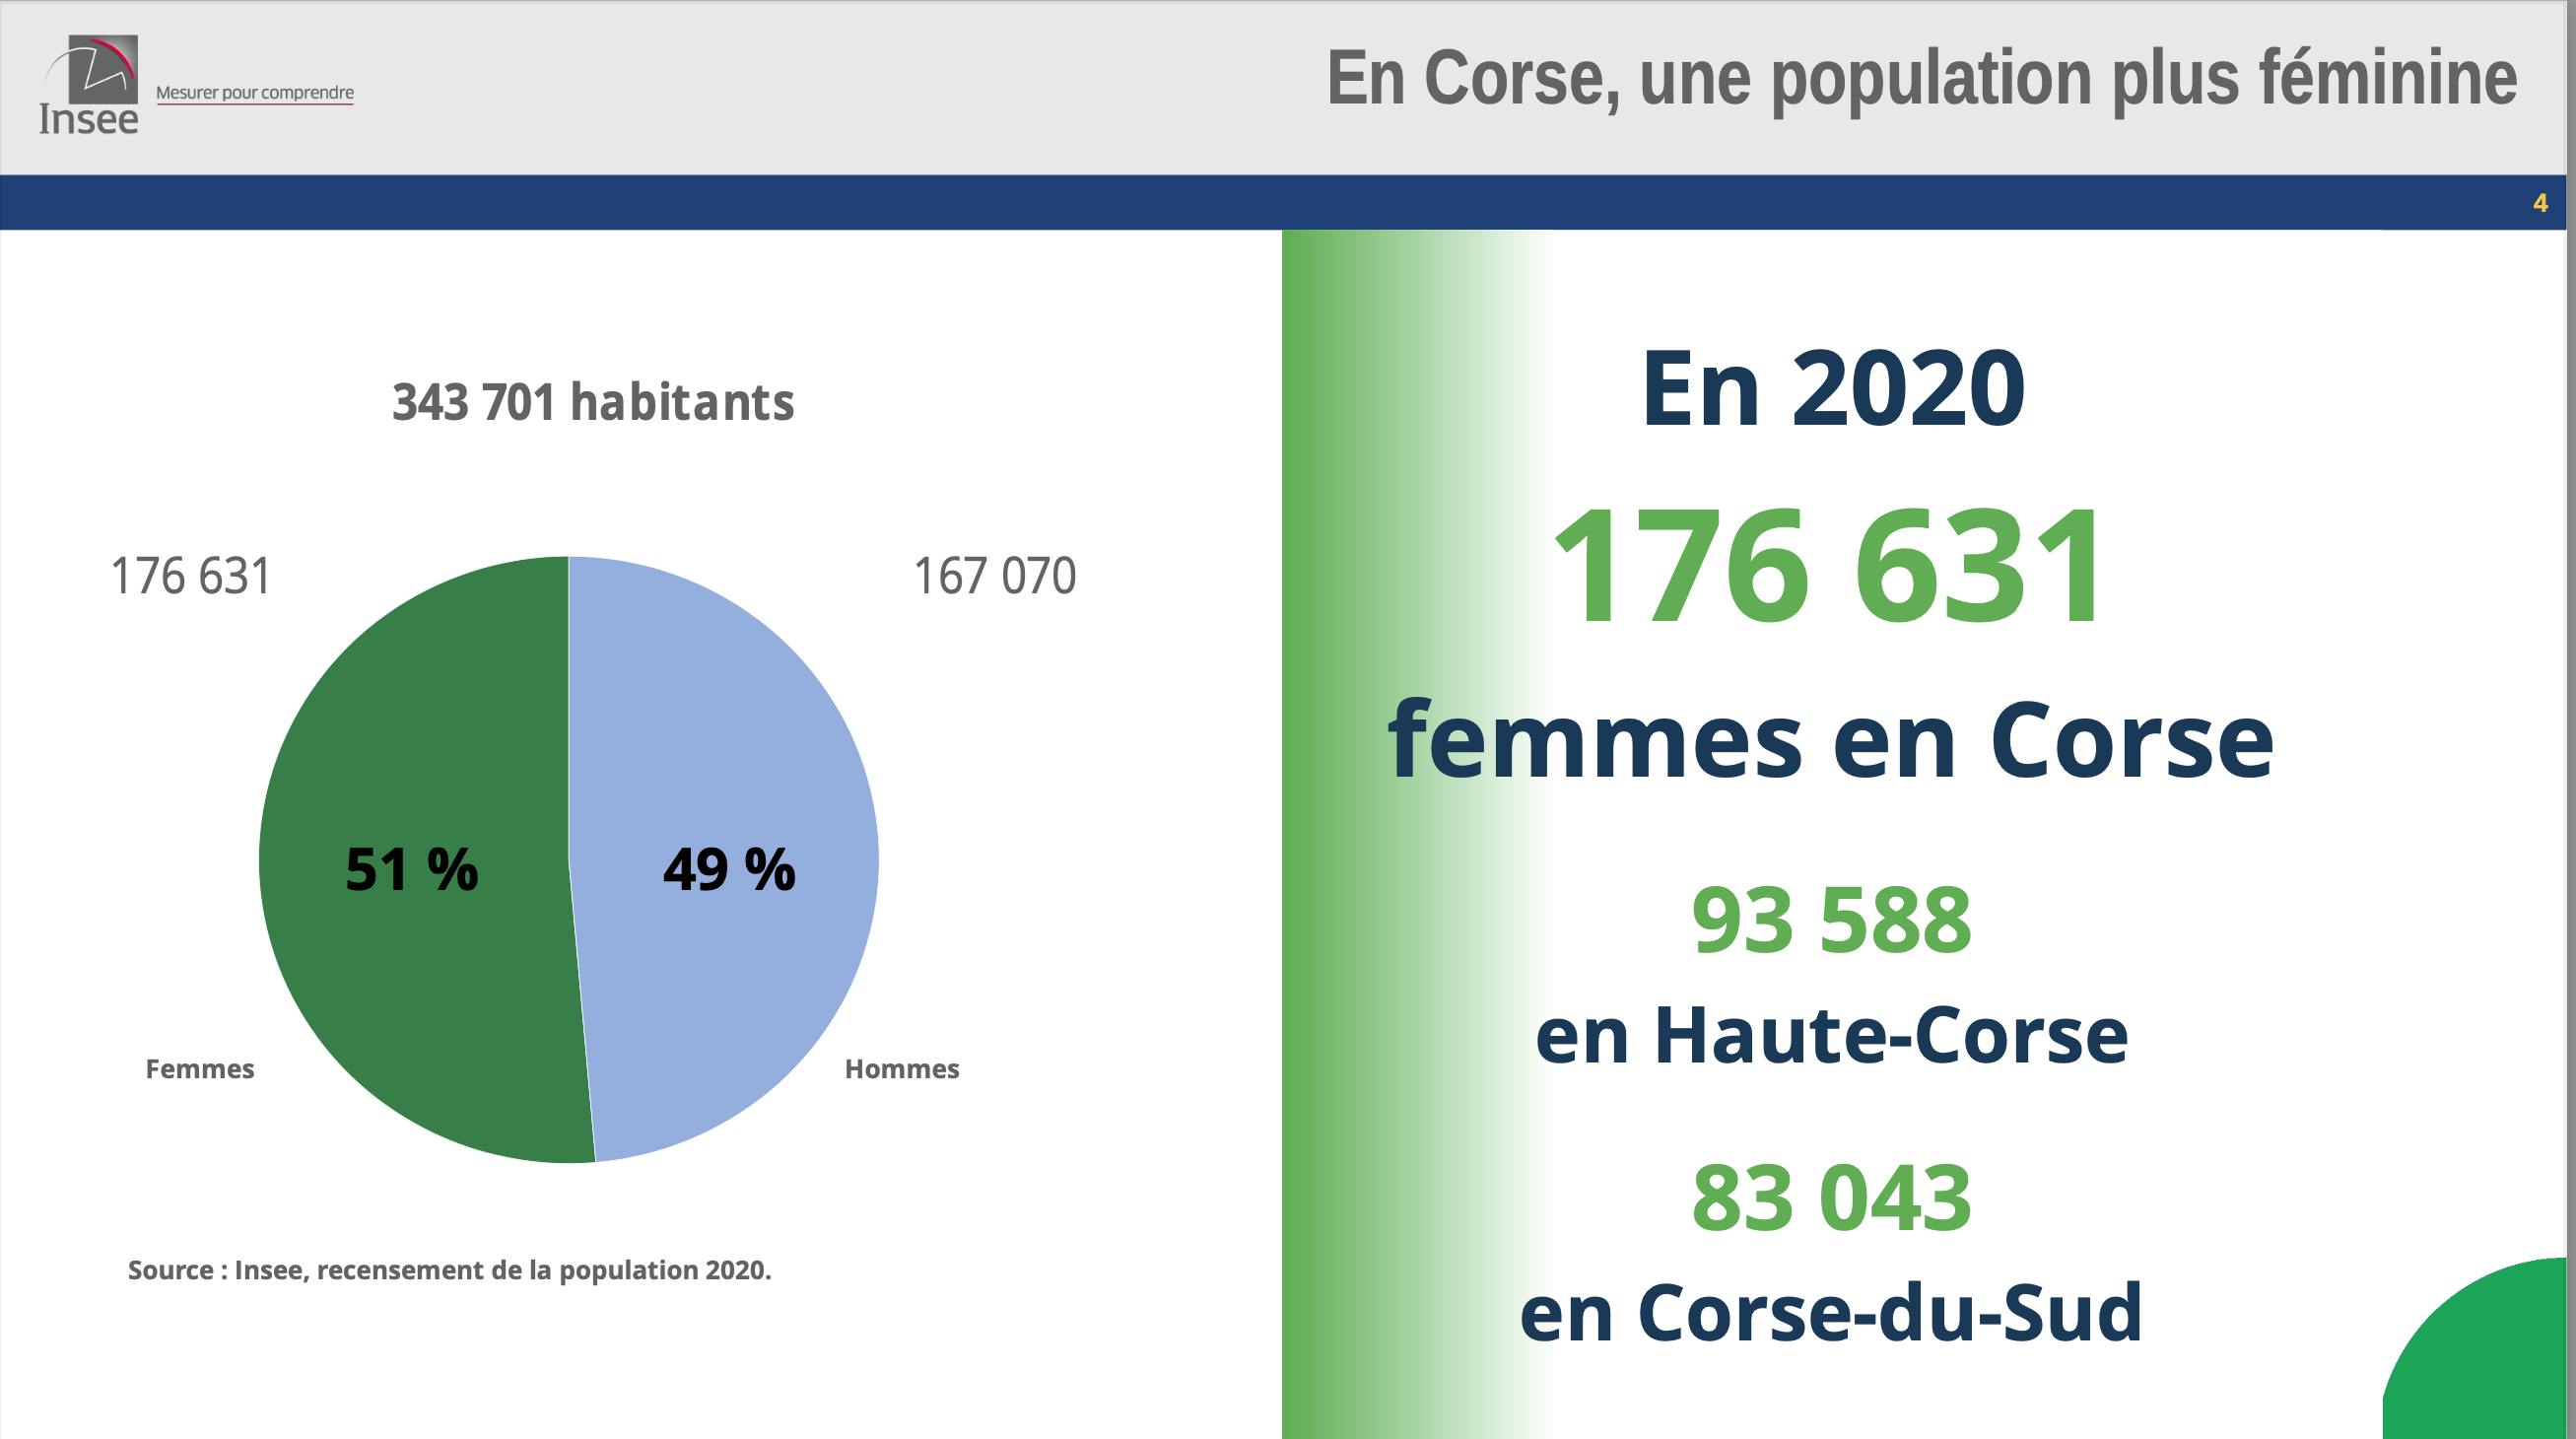 En Corse, une population plus féminine